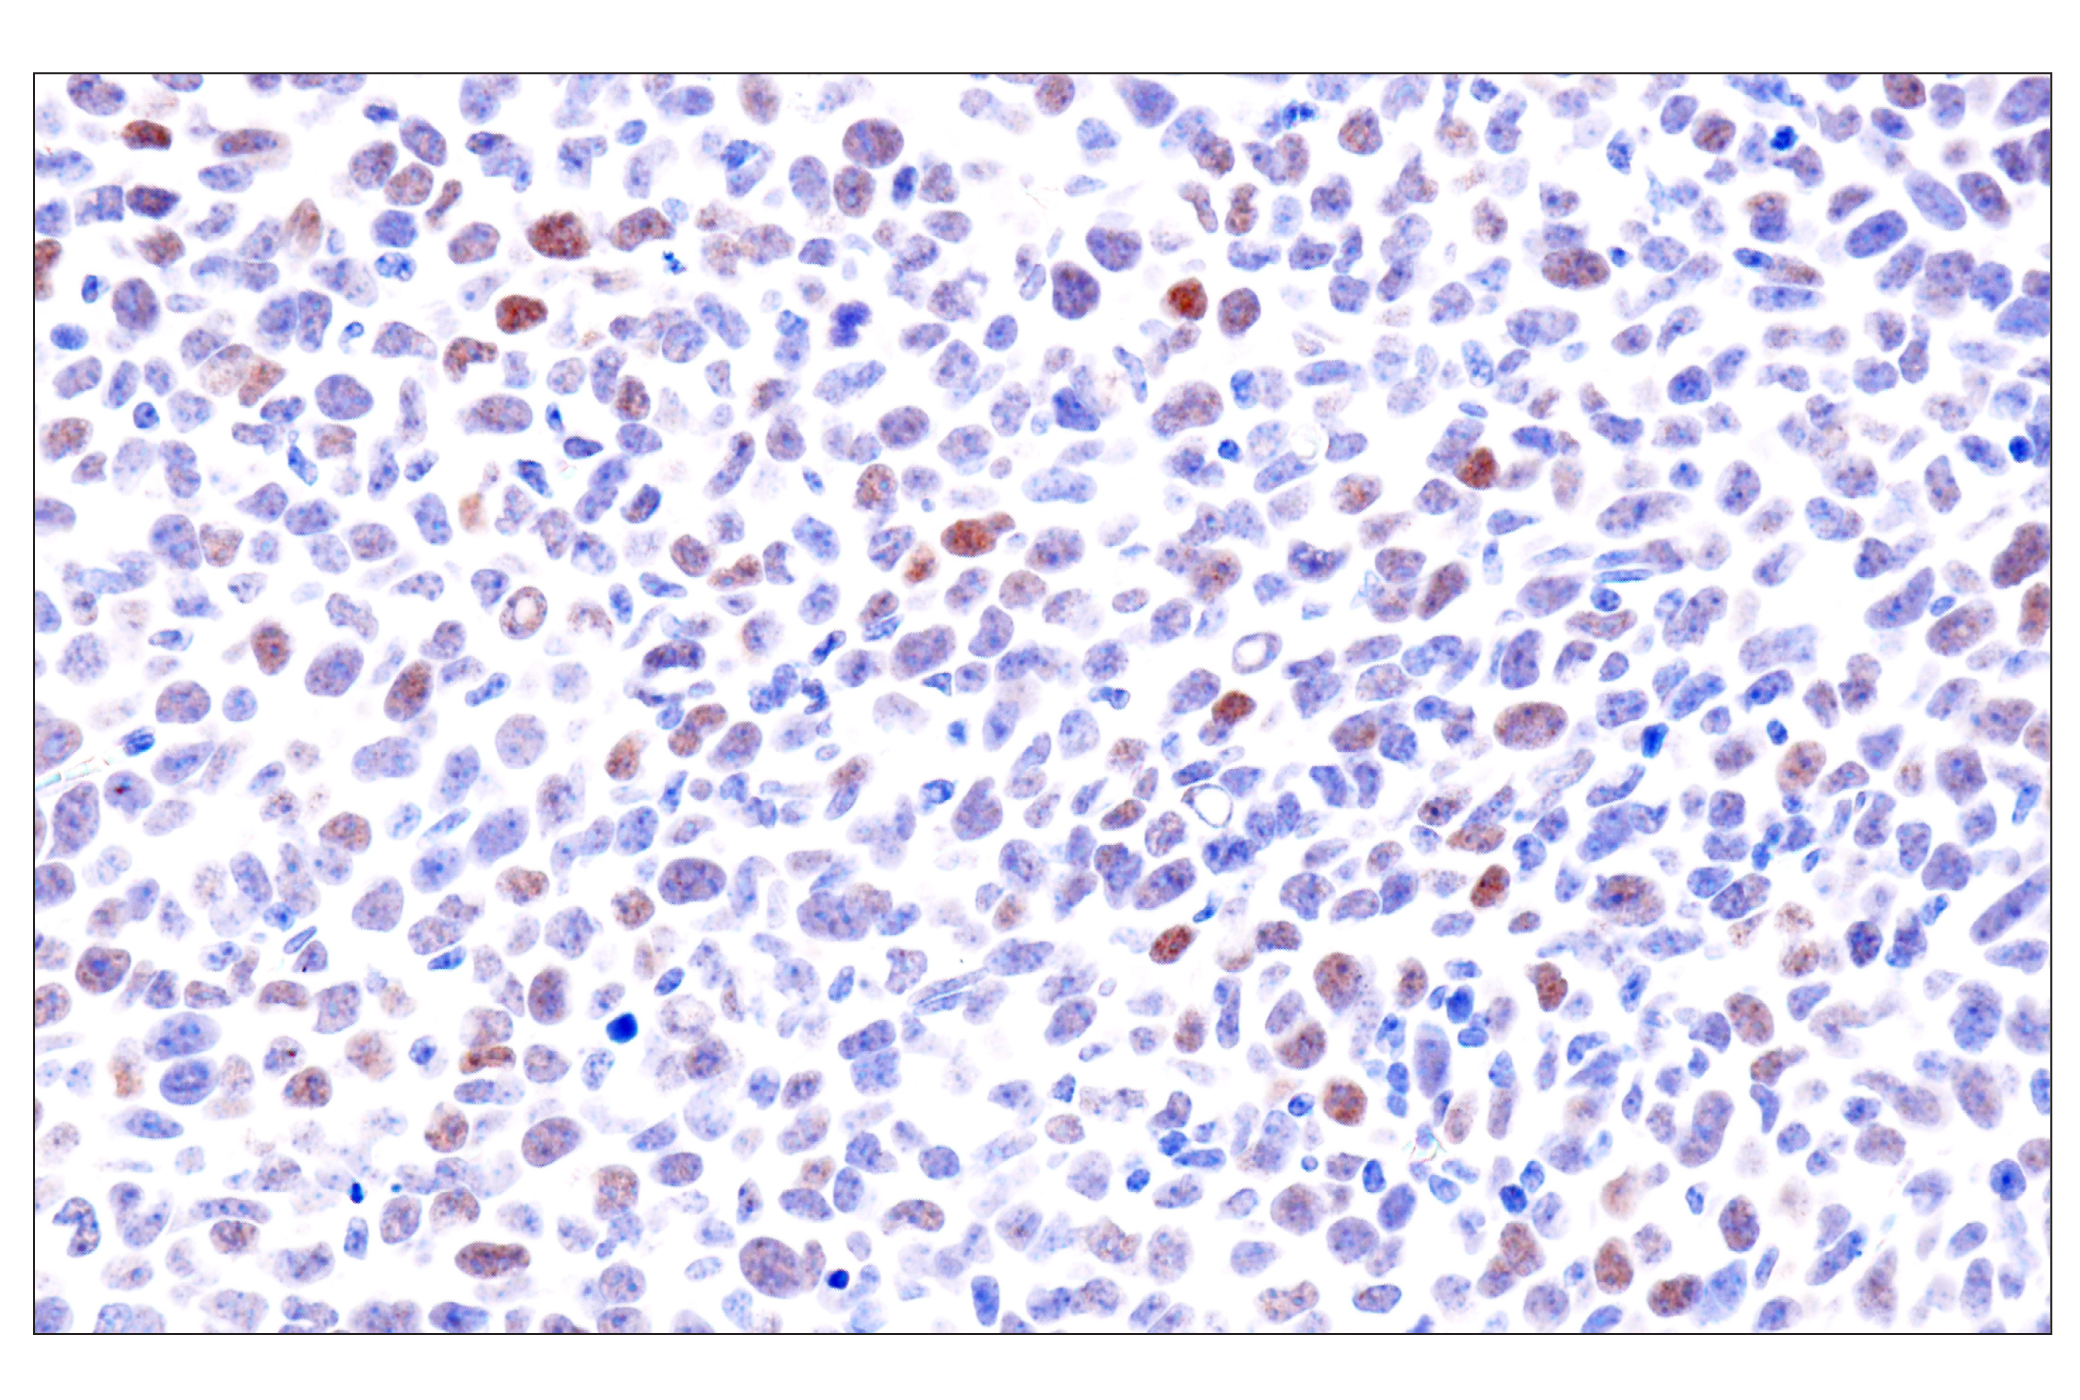  Image 56: GATA Transcription Factor Antibody Sampler Kit